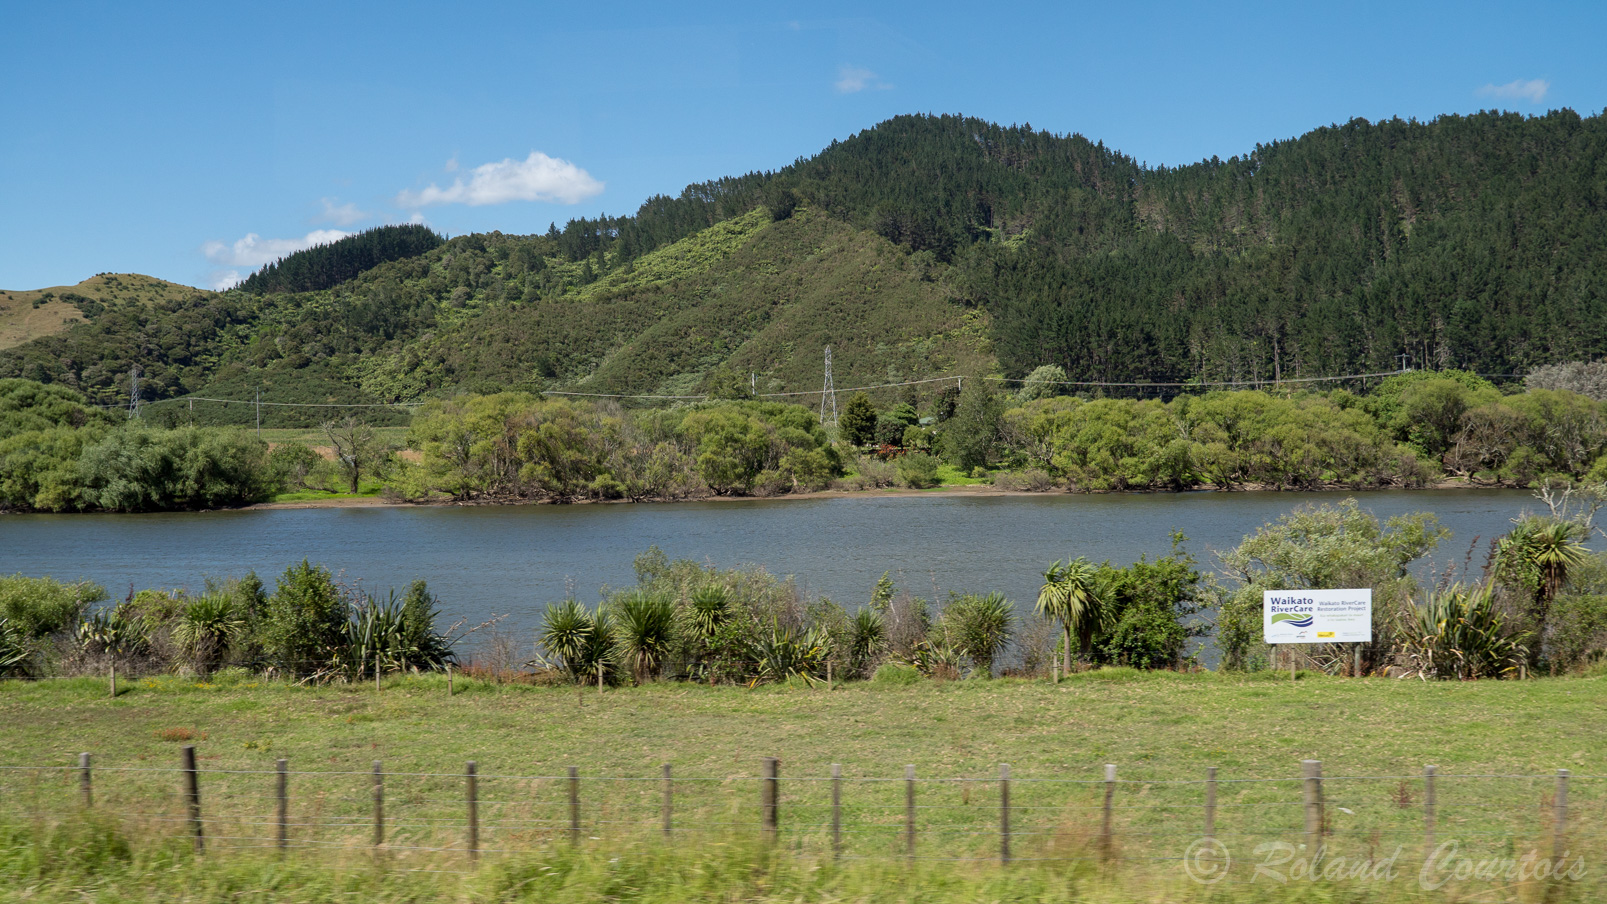 La route longe la rivière Waikato (rivière encore fort polluée par les nitrates et l’arsenic: il est interdit de pécher).